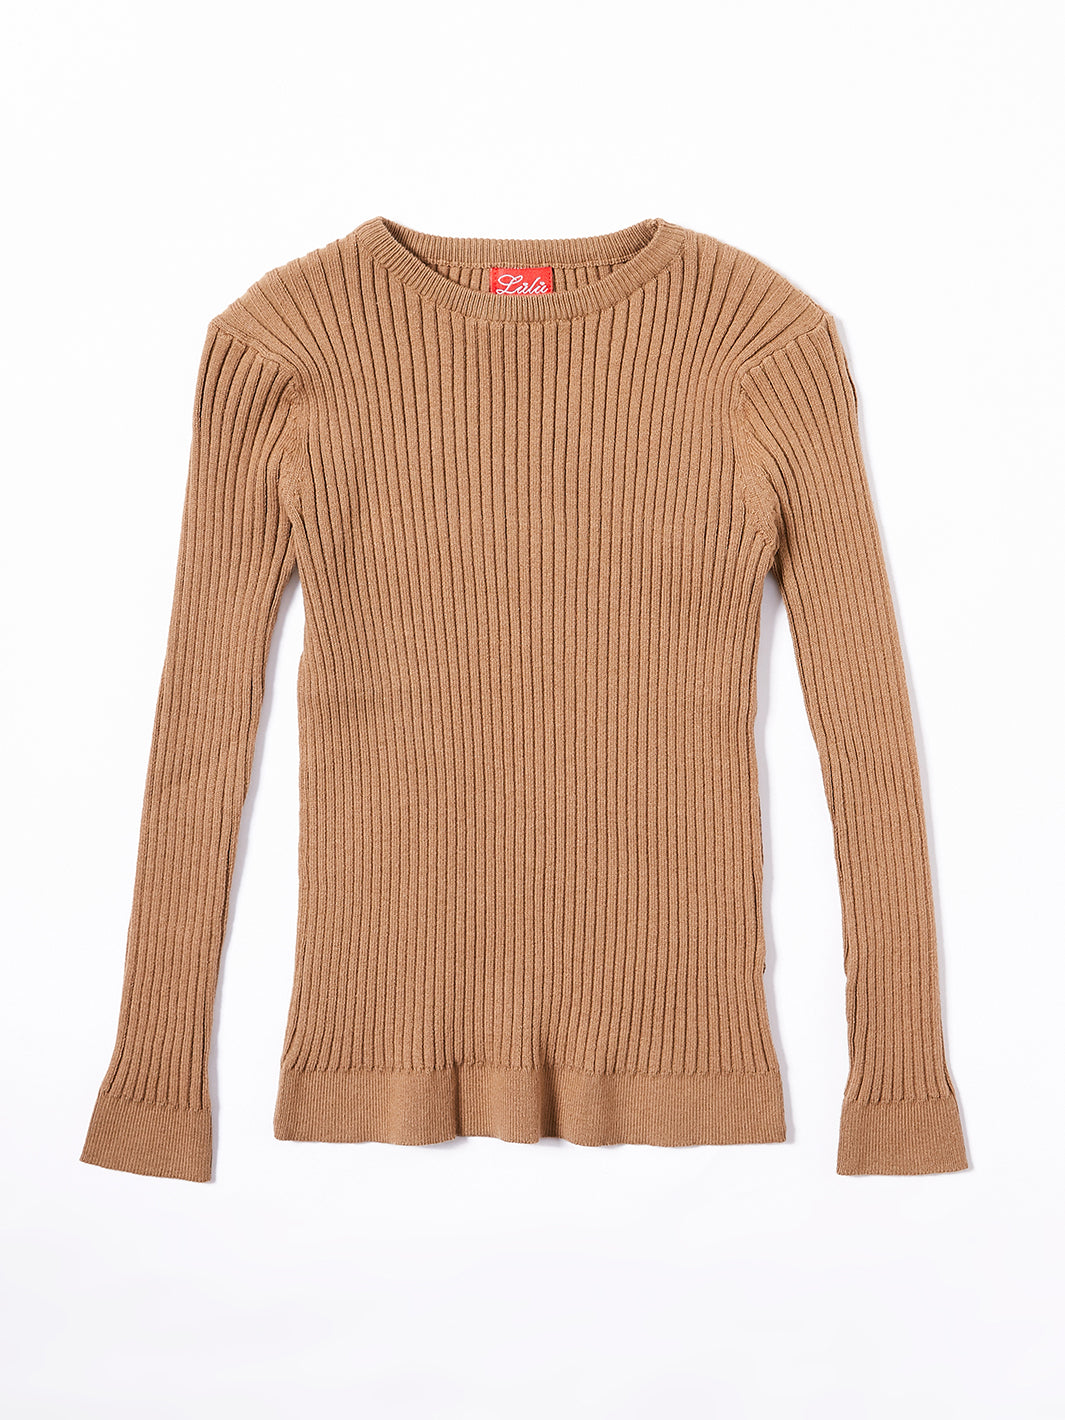 Round Neck Basic Sweater  - Camel